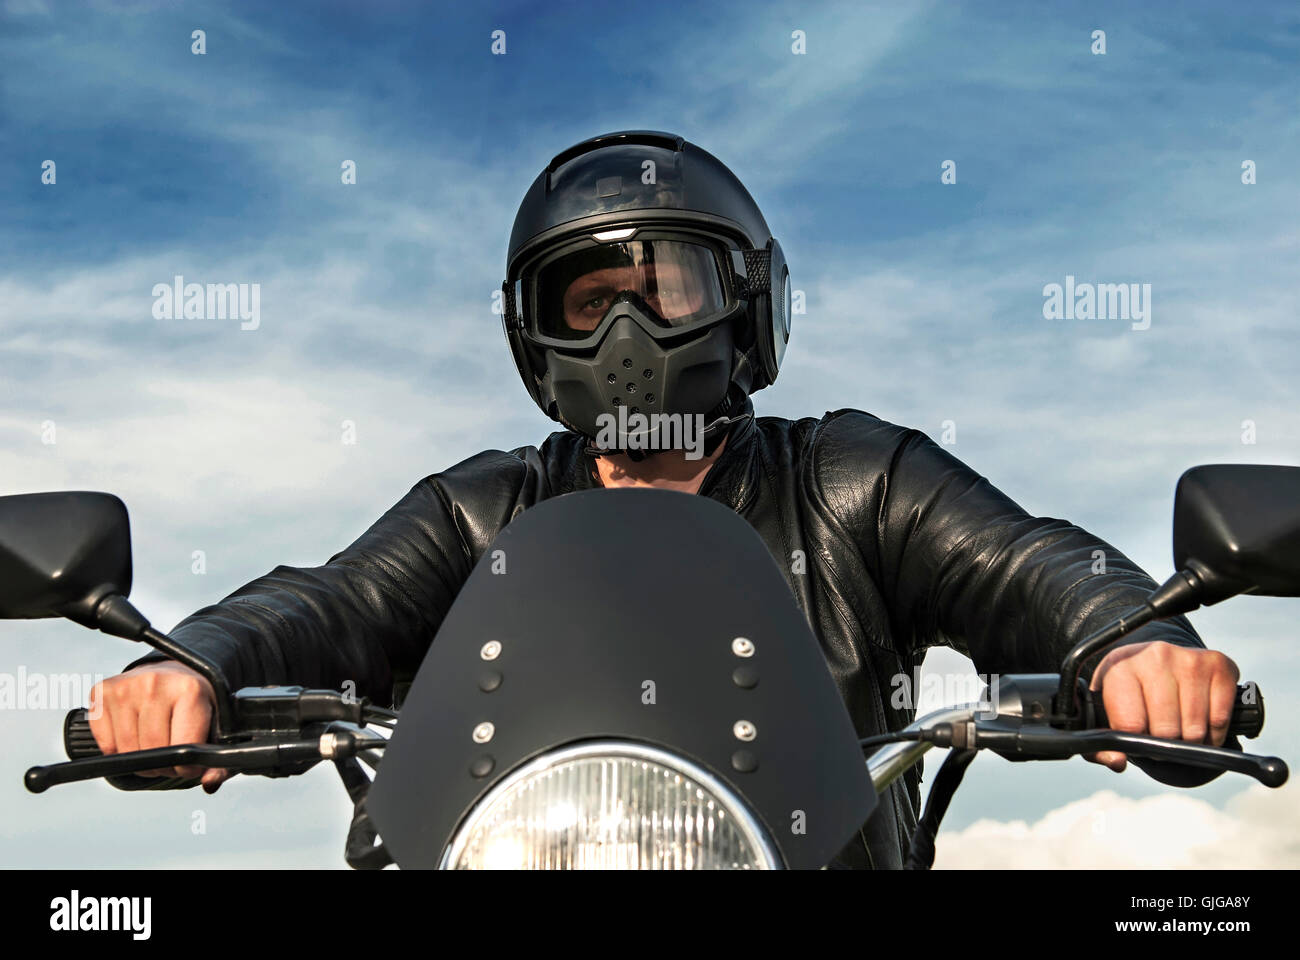 Motorradfahrer Motorradfahrer sitzen auf schwarzen Motorradhelm mit Visier Leder Jacke blauer Himmel weiße Wolken die Hände am Lenker Stockfoto